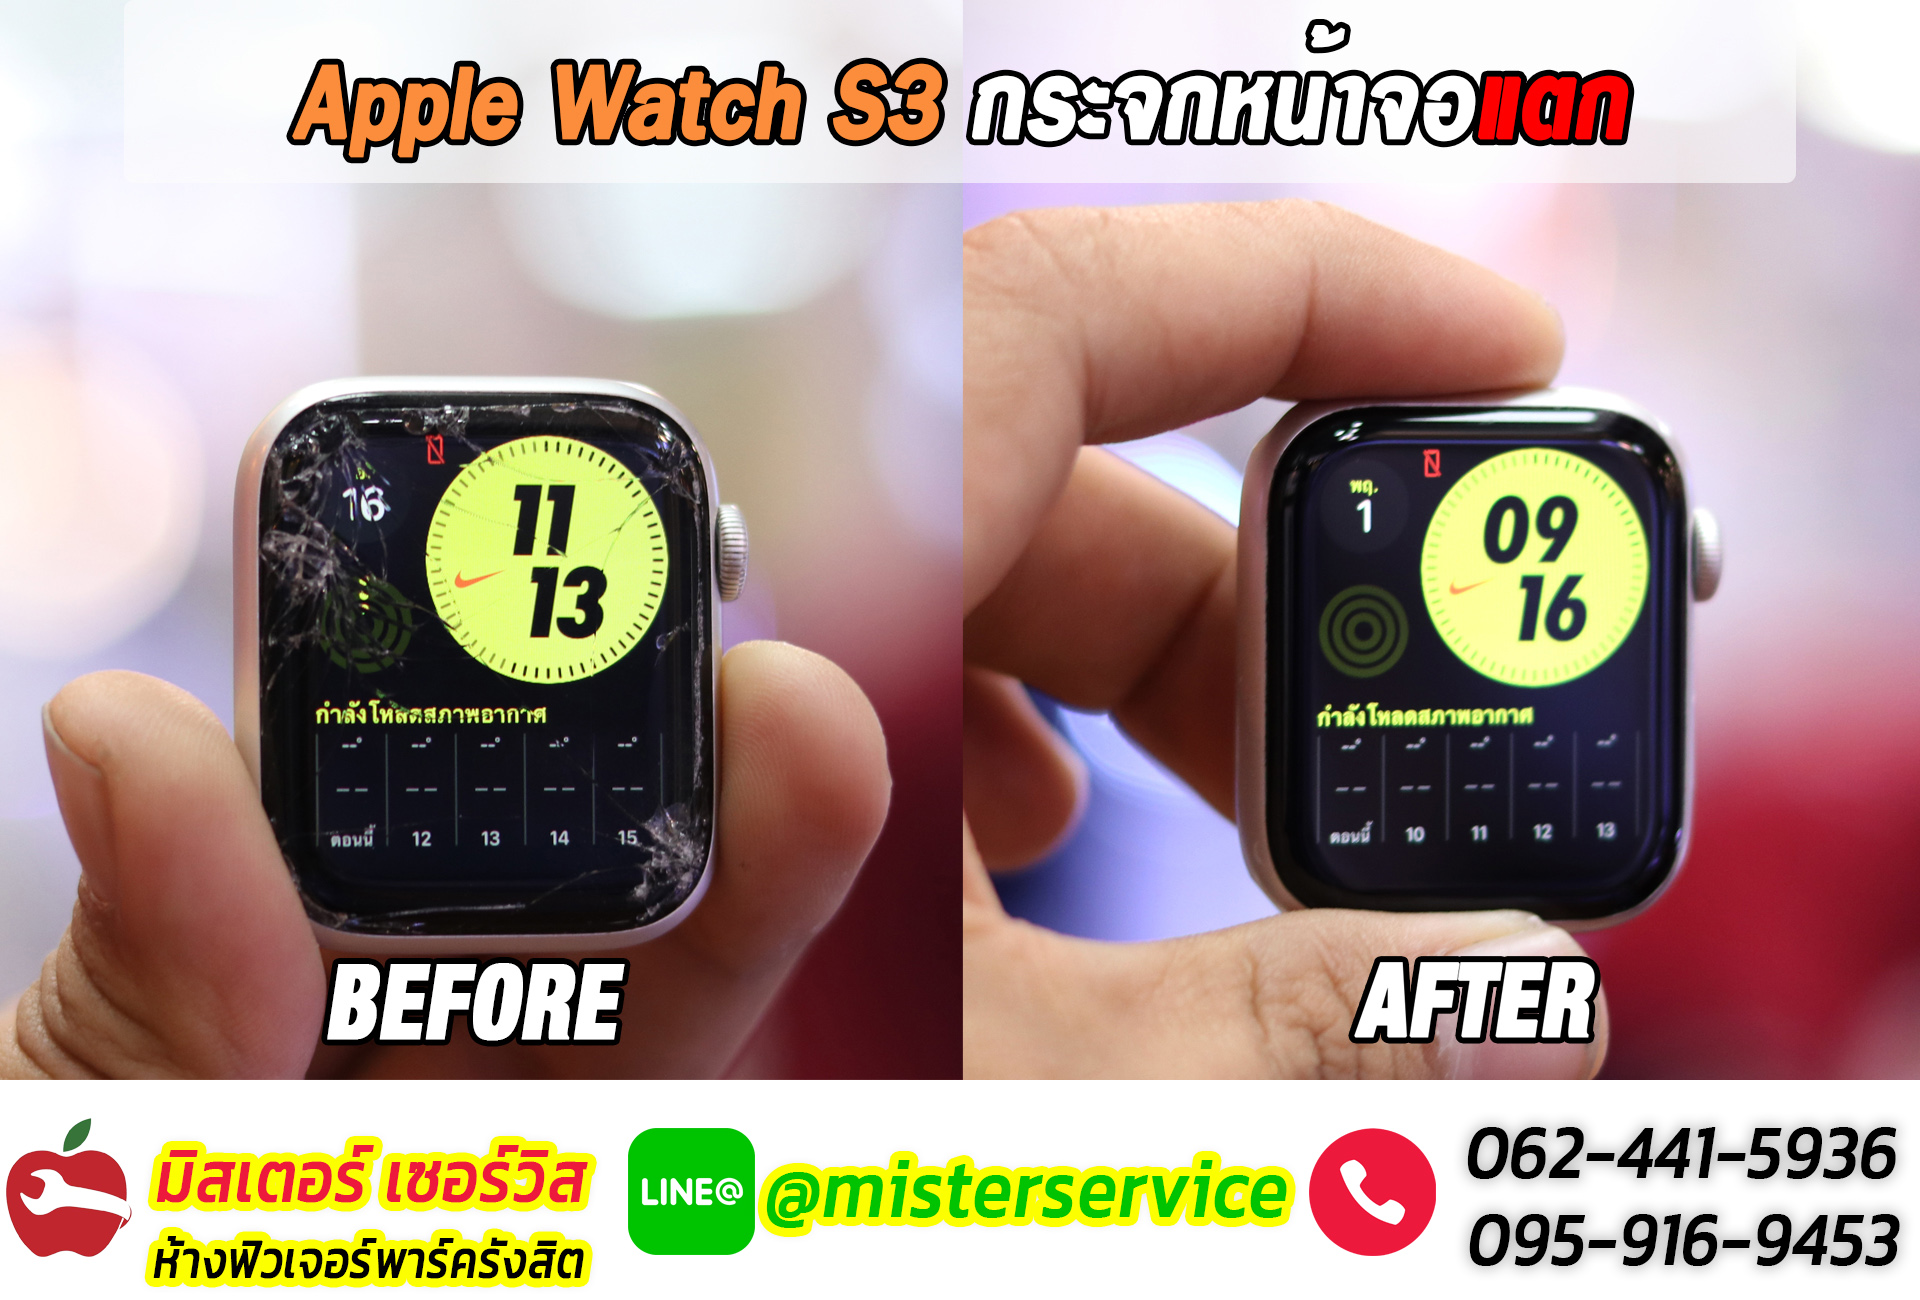 ซ่อม Apple Watch ยะลา ปัตตานี